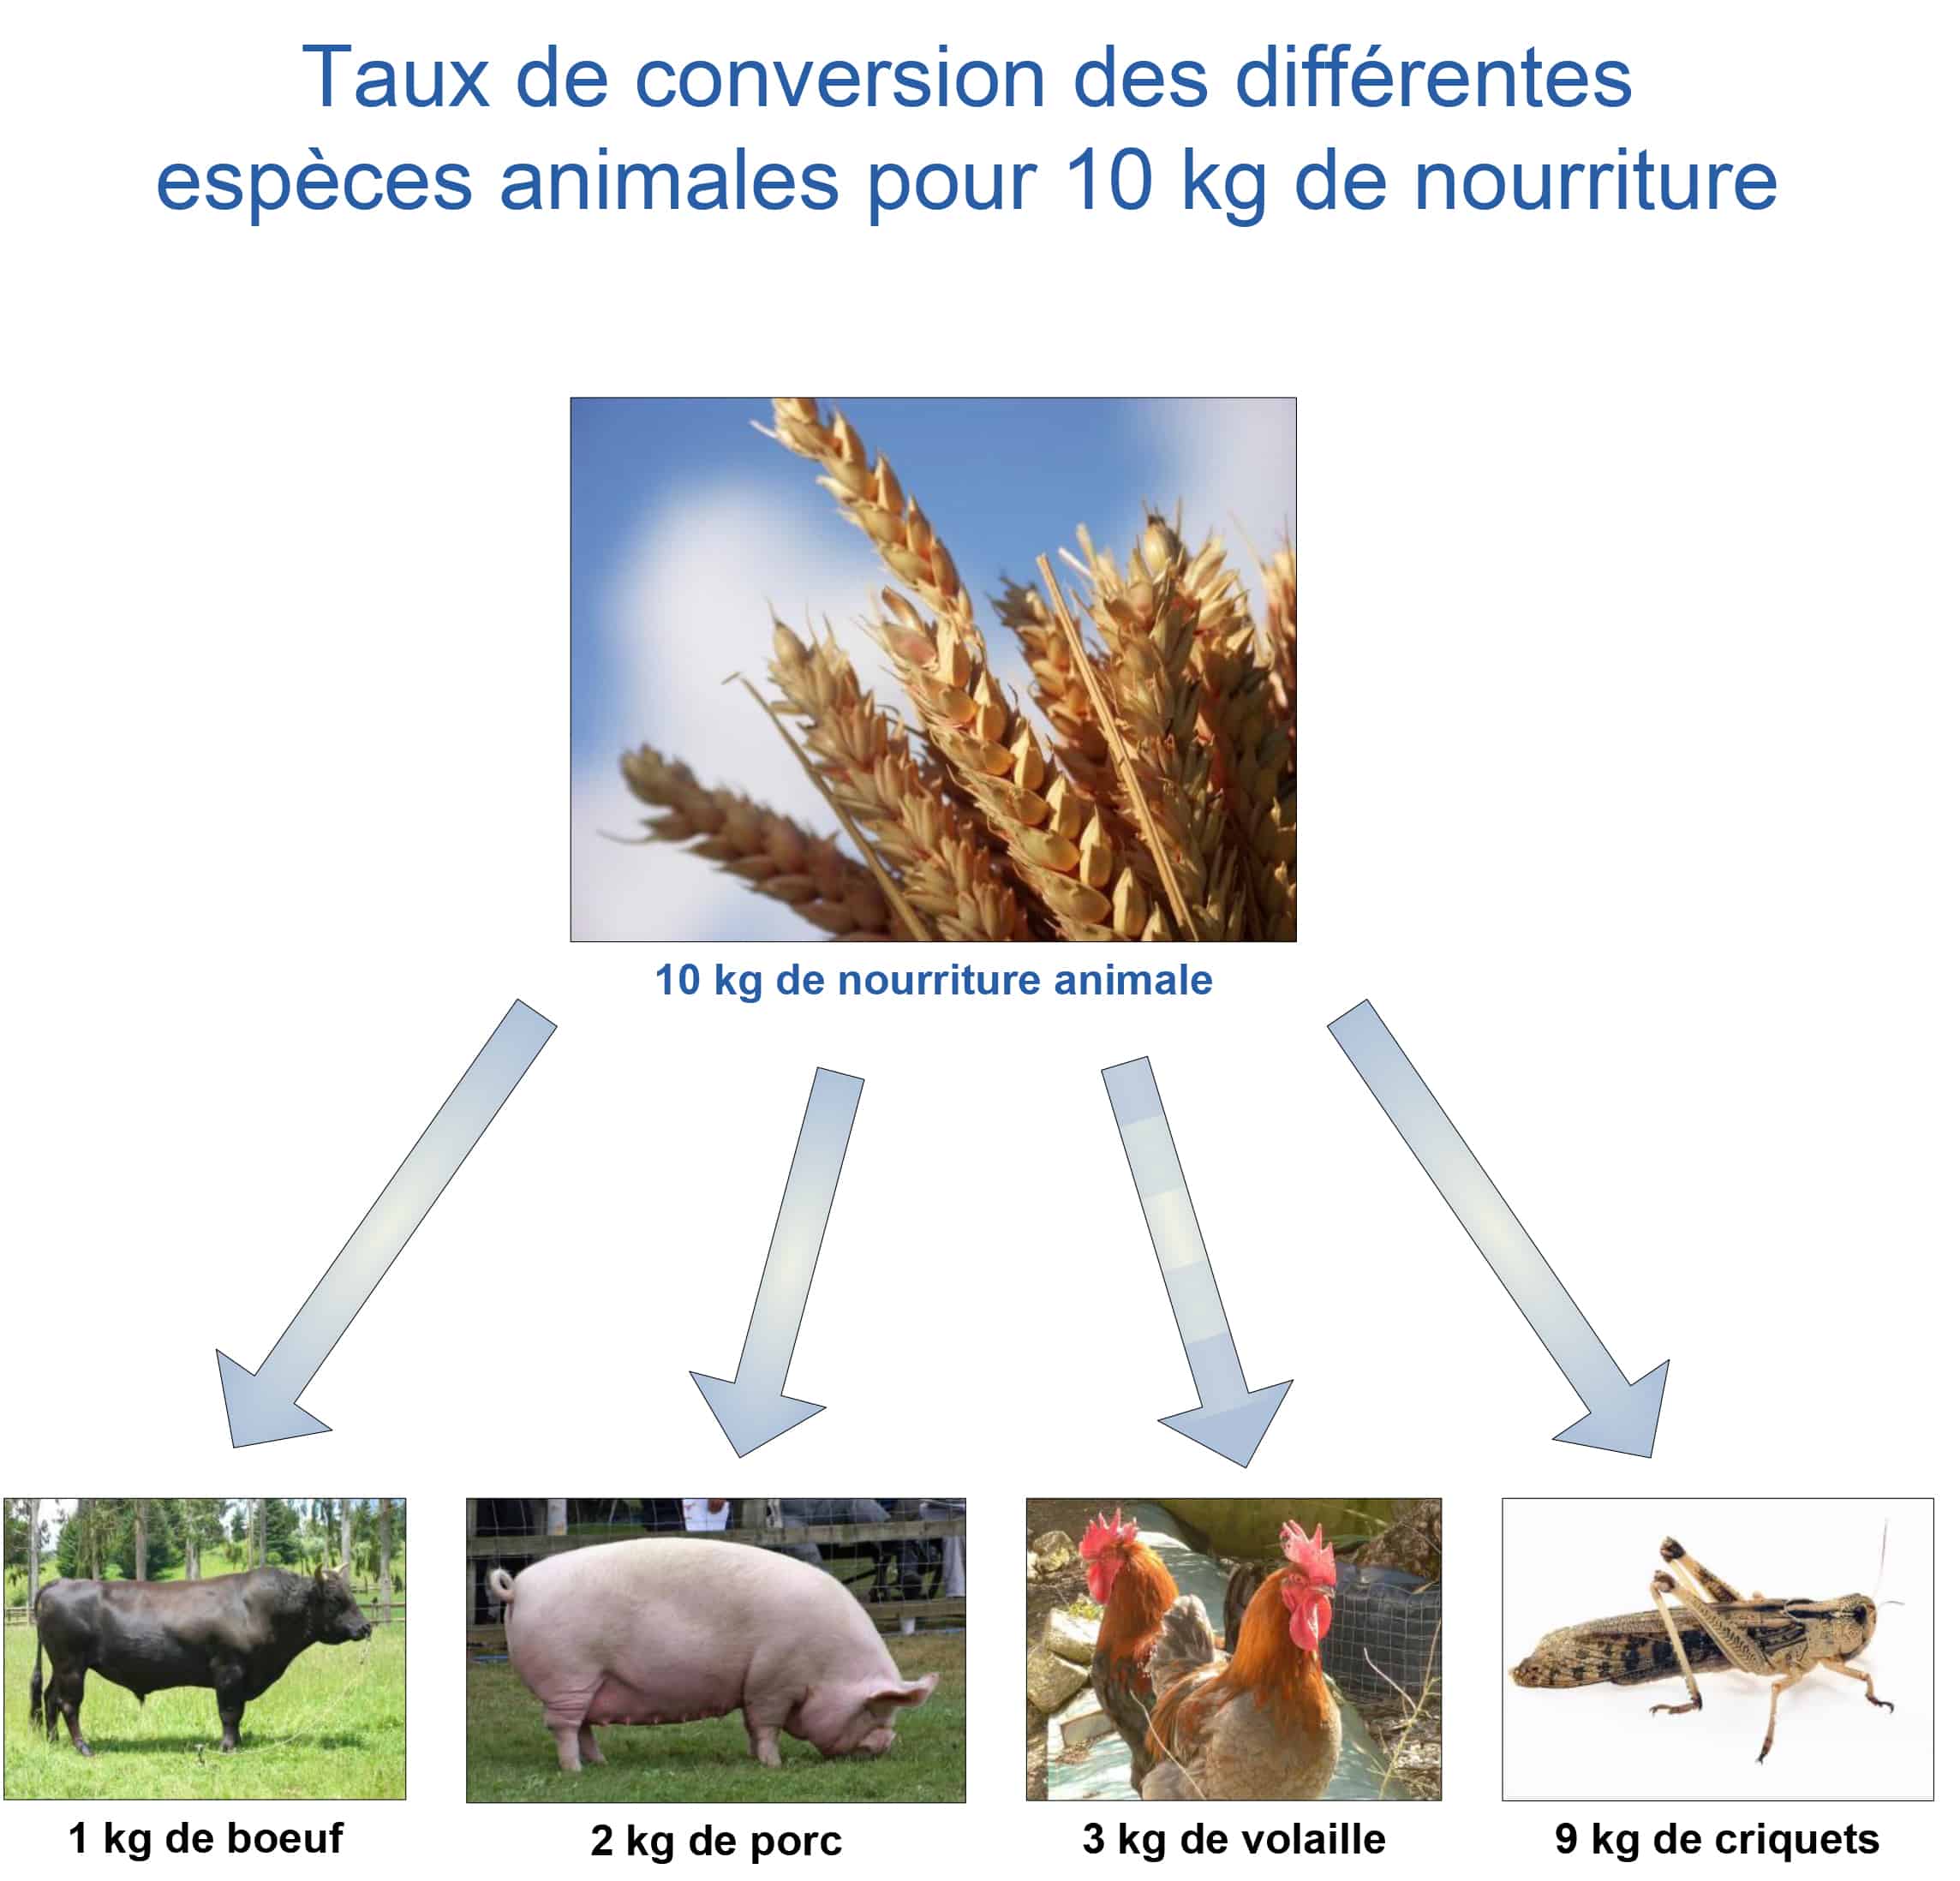 Taux de conversion des différentes espèces animales pour 10 kg de nourriture